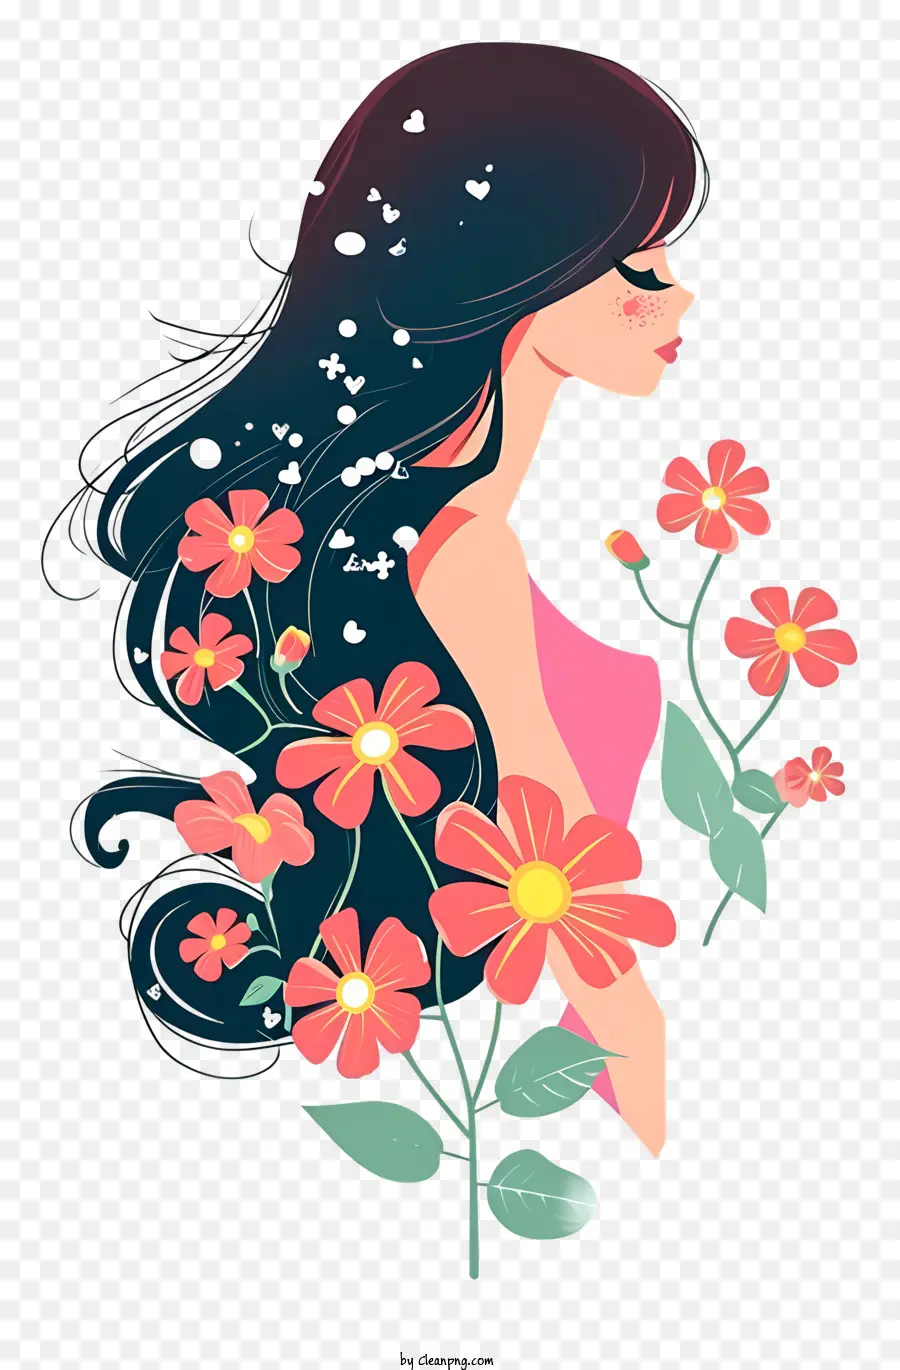 donna e fiori semplicistici arte vettoriale beauty capelli lunghi capelli neri sorridenti - Serenità e bellezza in un paesaggio floreale